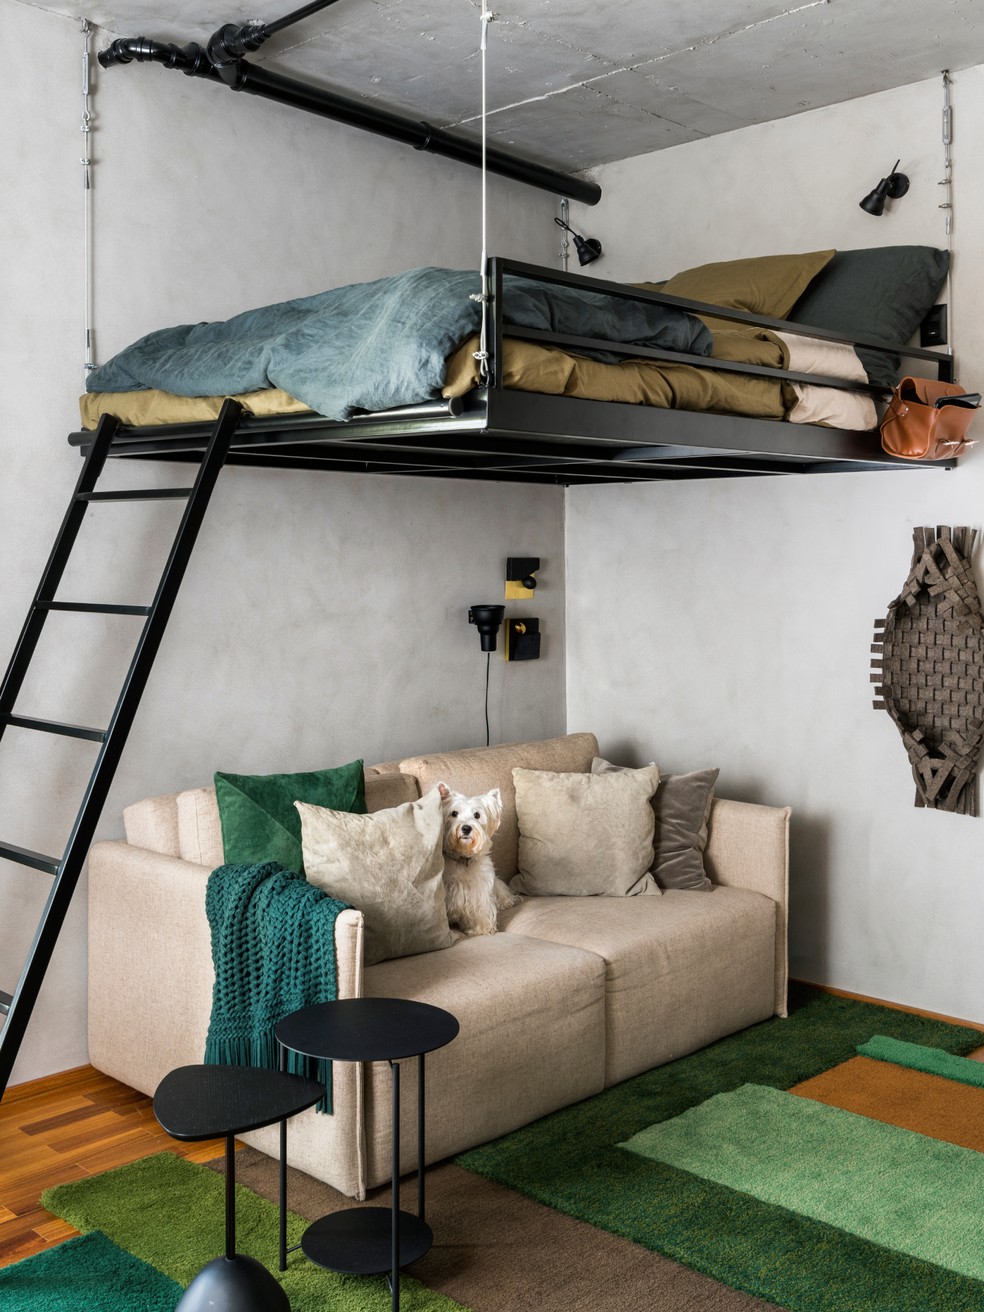 Décor do dia: quarto com cama suspensa e estilo industrial — Foto: Renato Navarro